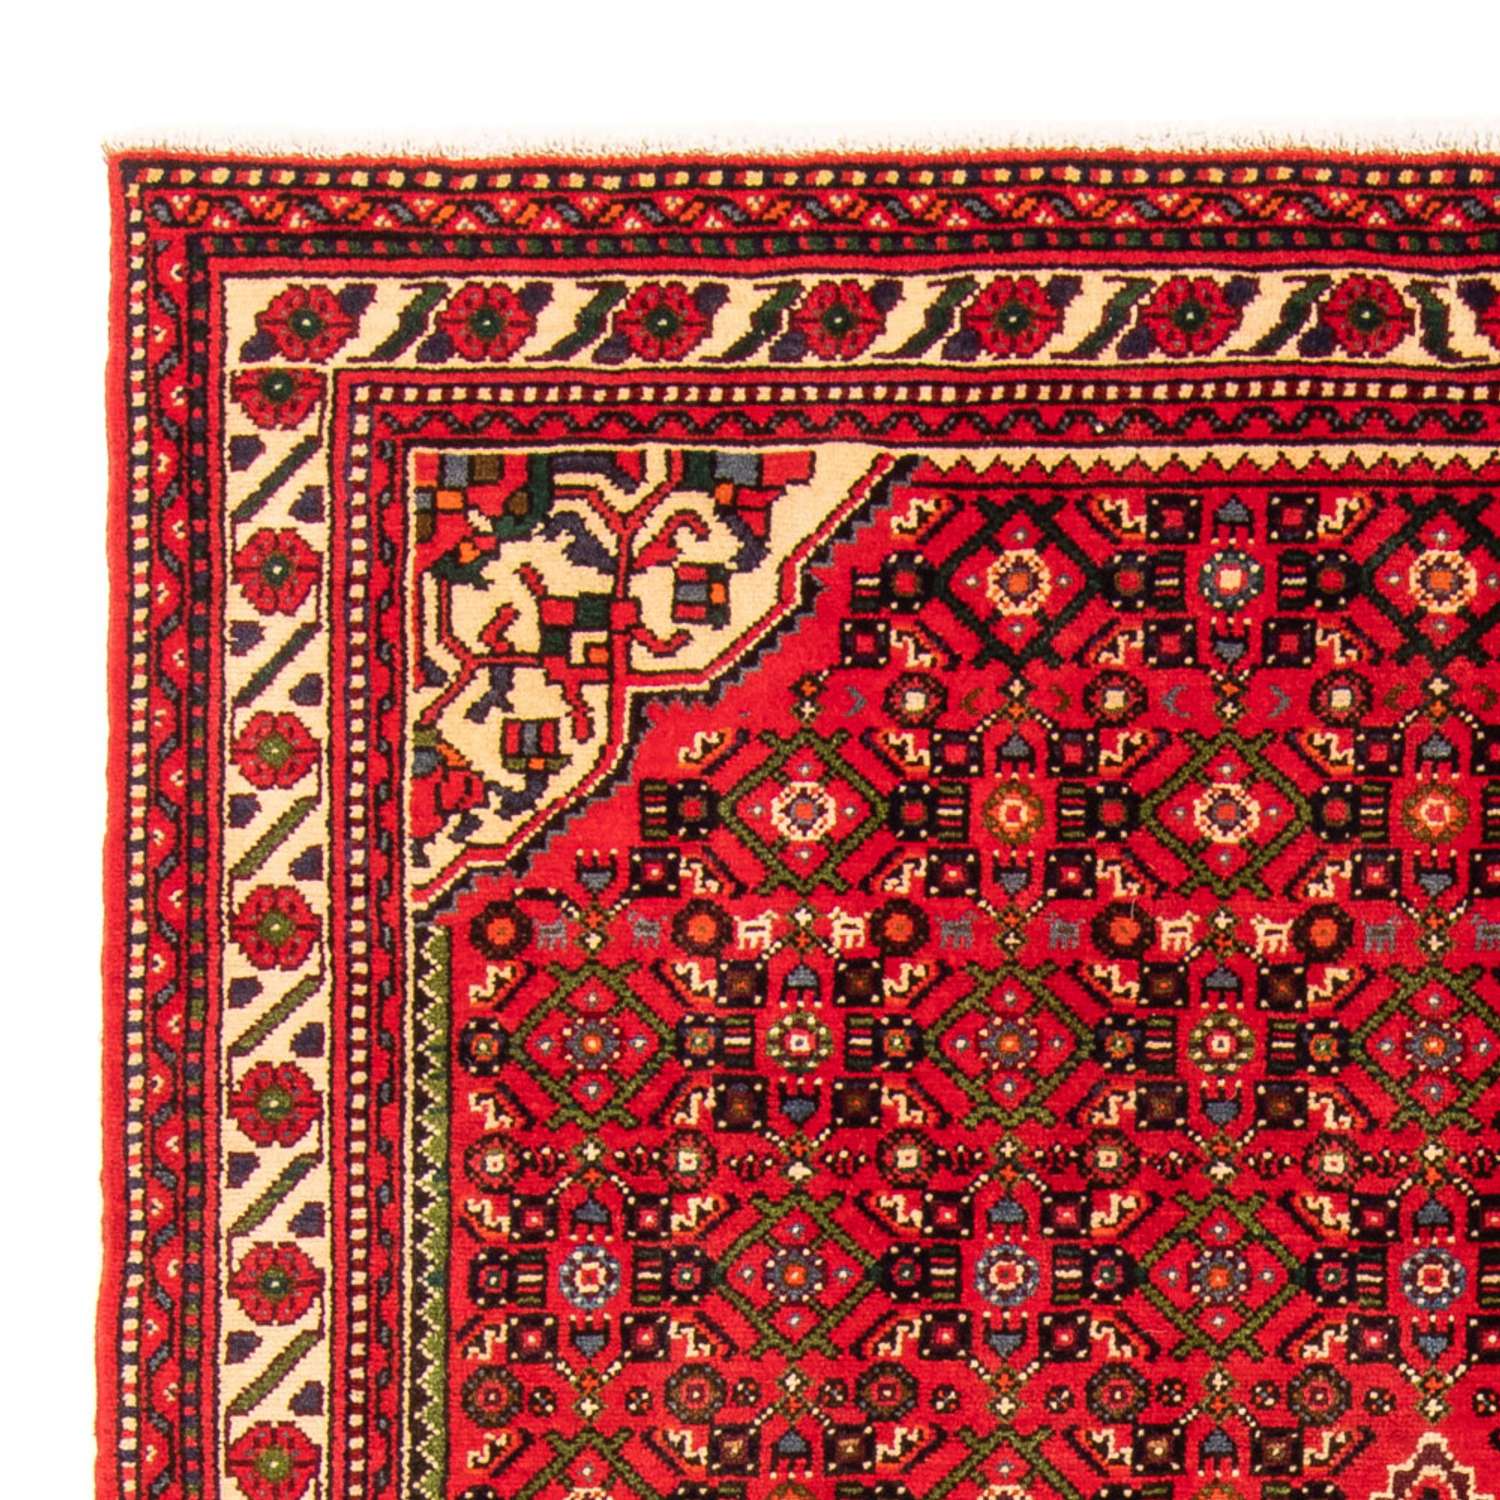 Persisk tæppe - Nomadisk - 204 x 155 cm - rød